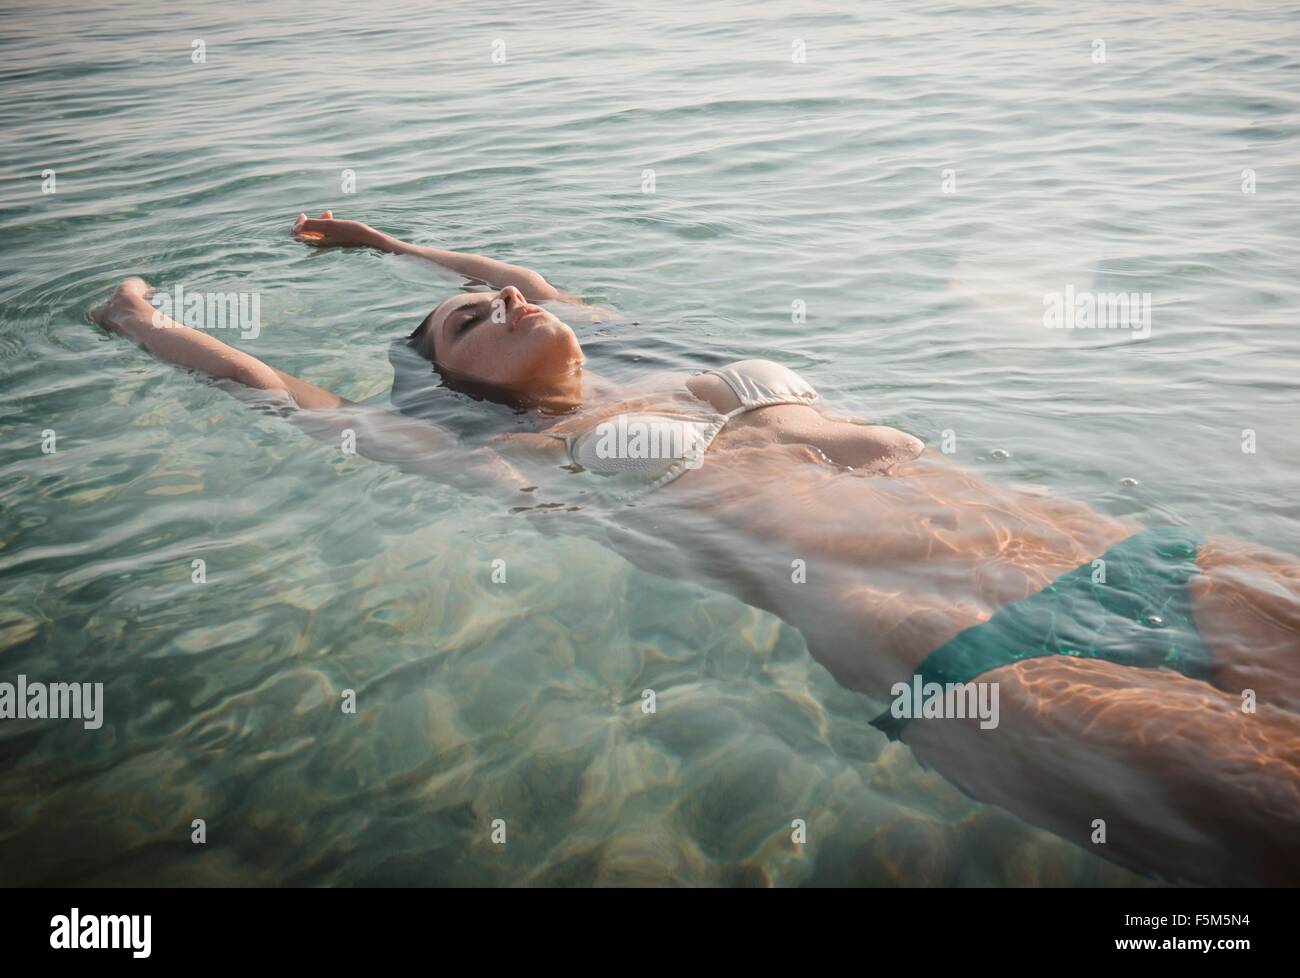 Young woman wearing bikini floating in sea Stock Photo